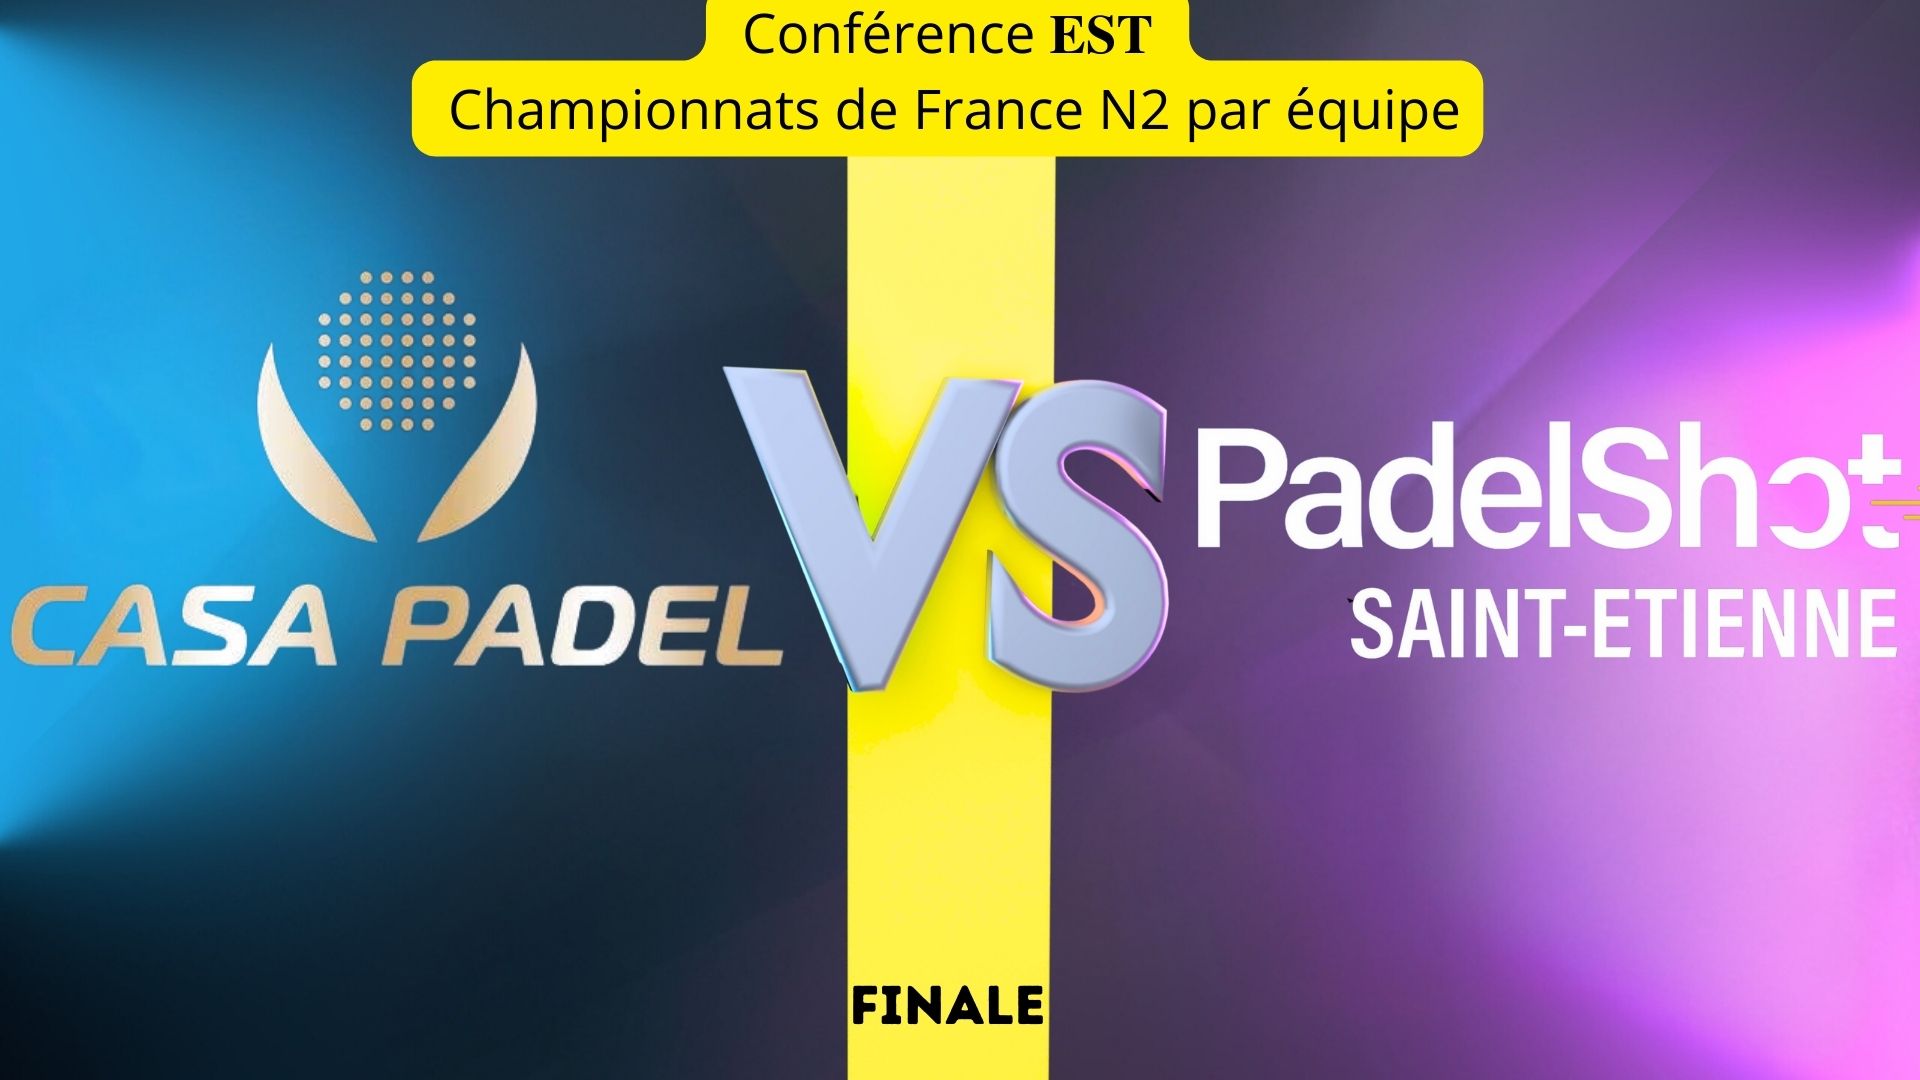 Finale Est : Casa Padel vs PadelShot Saint-Etienne